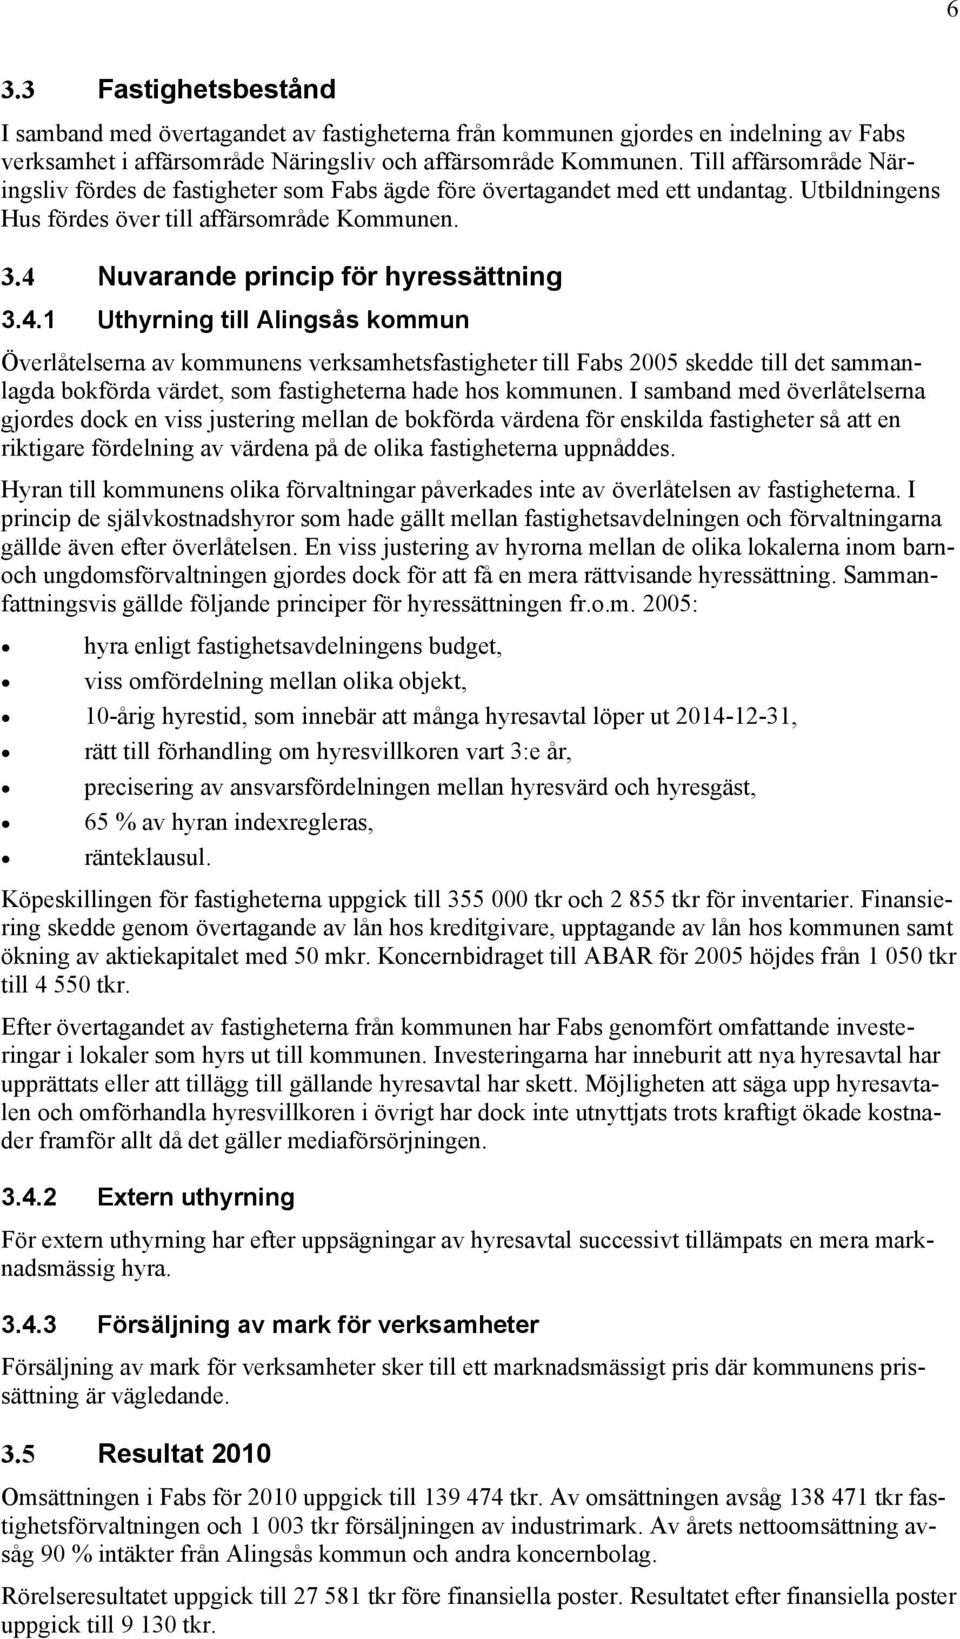 4 Nuvarande princip för hyressättning 3.4.1 Uthyrning till Alingsås kommun Överlåtelserna av kommunens verksamhetsfastigheter till Fabs 2005 skedde till det sammanlagda bokförda värdet, som fastigheterna hade hos kommunen.